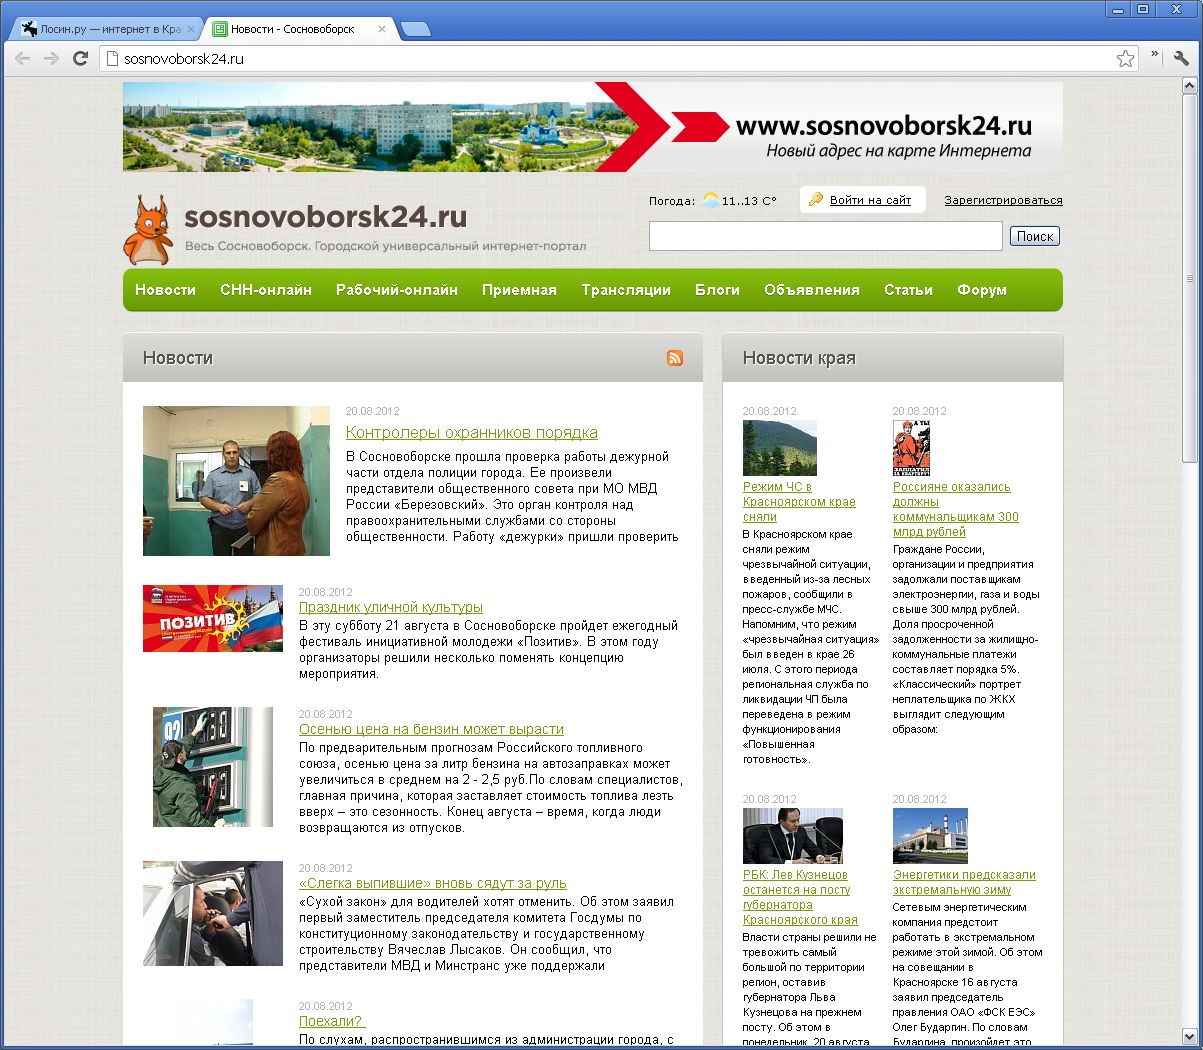 Сайт сосновоборский городской суд красноярского края. Сосновоборск вакансии.